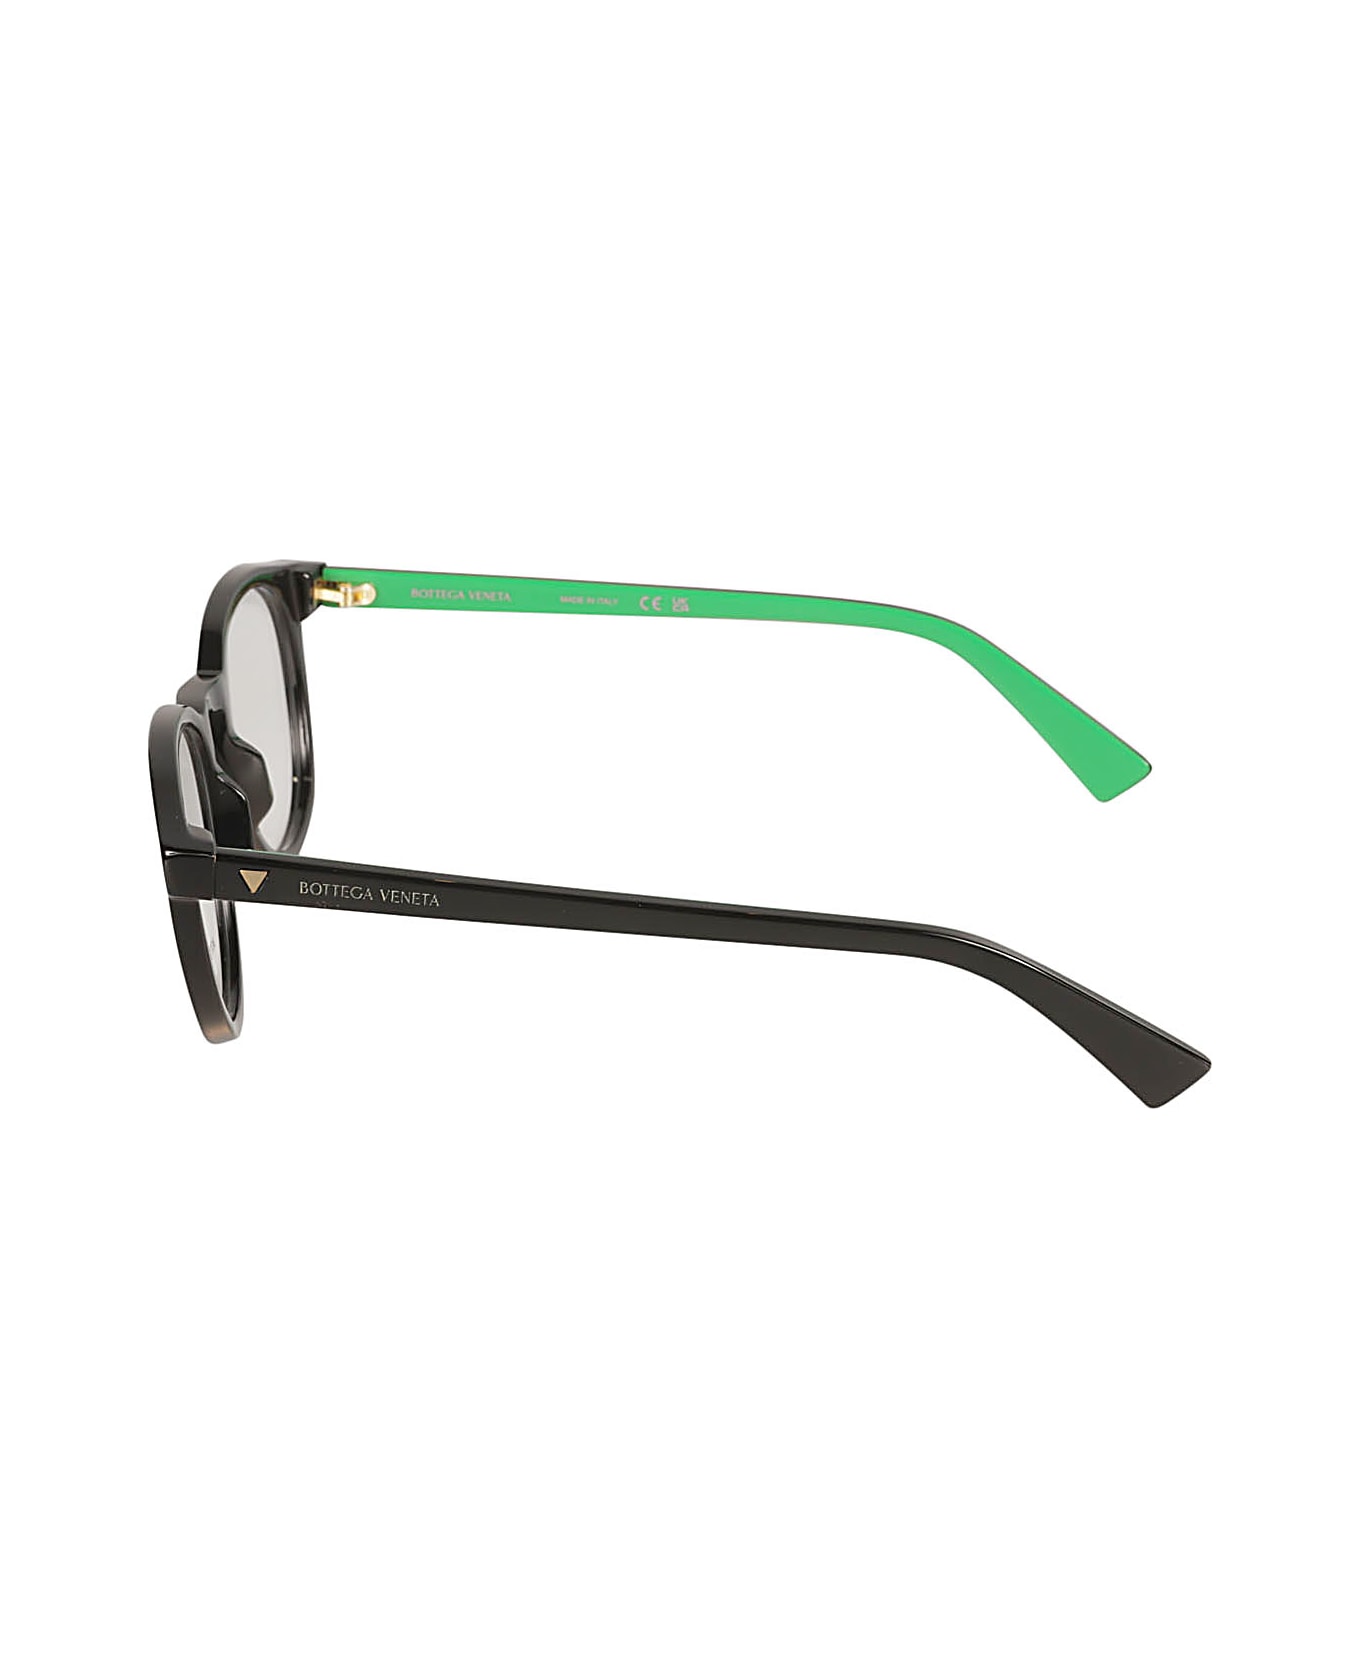 Bottega Veneta Eyewear Classic Round Frame Glasses - Black/Transparent アイウェア